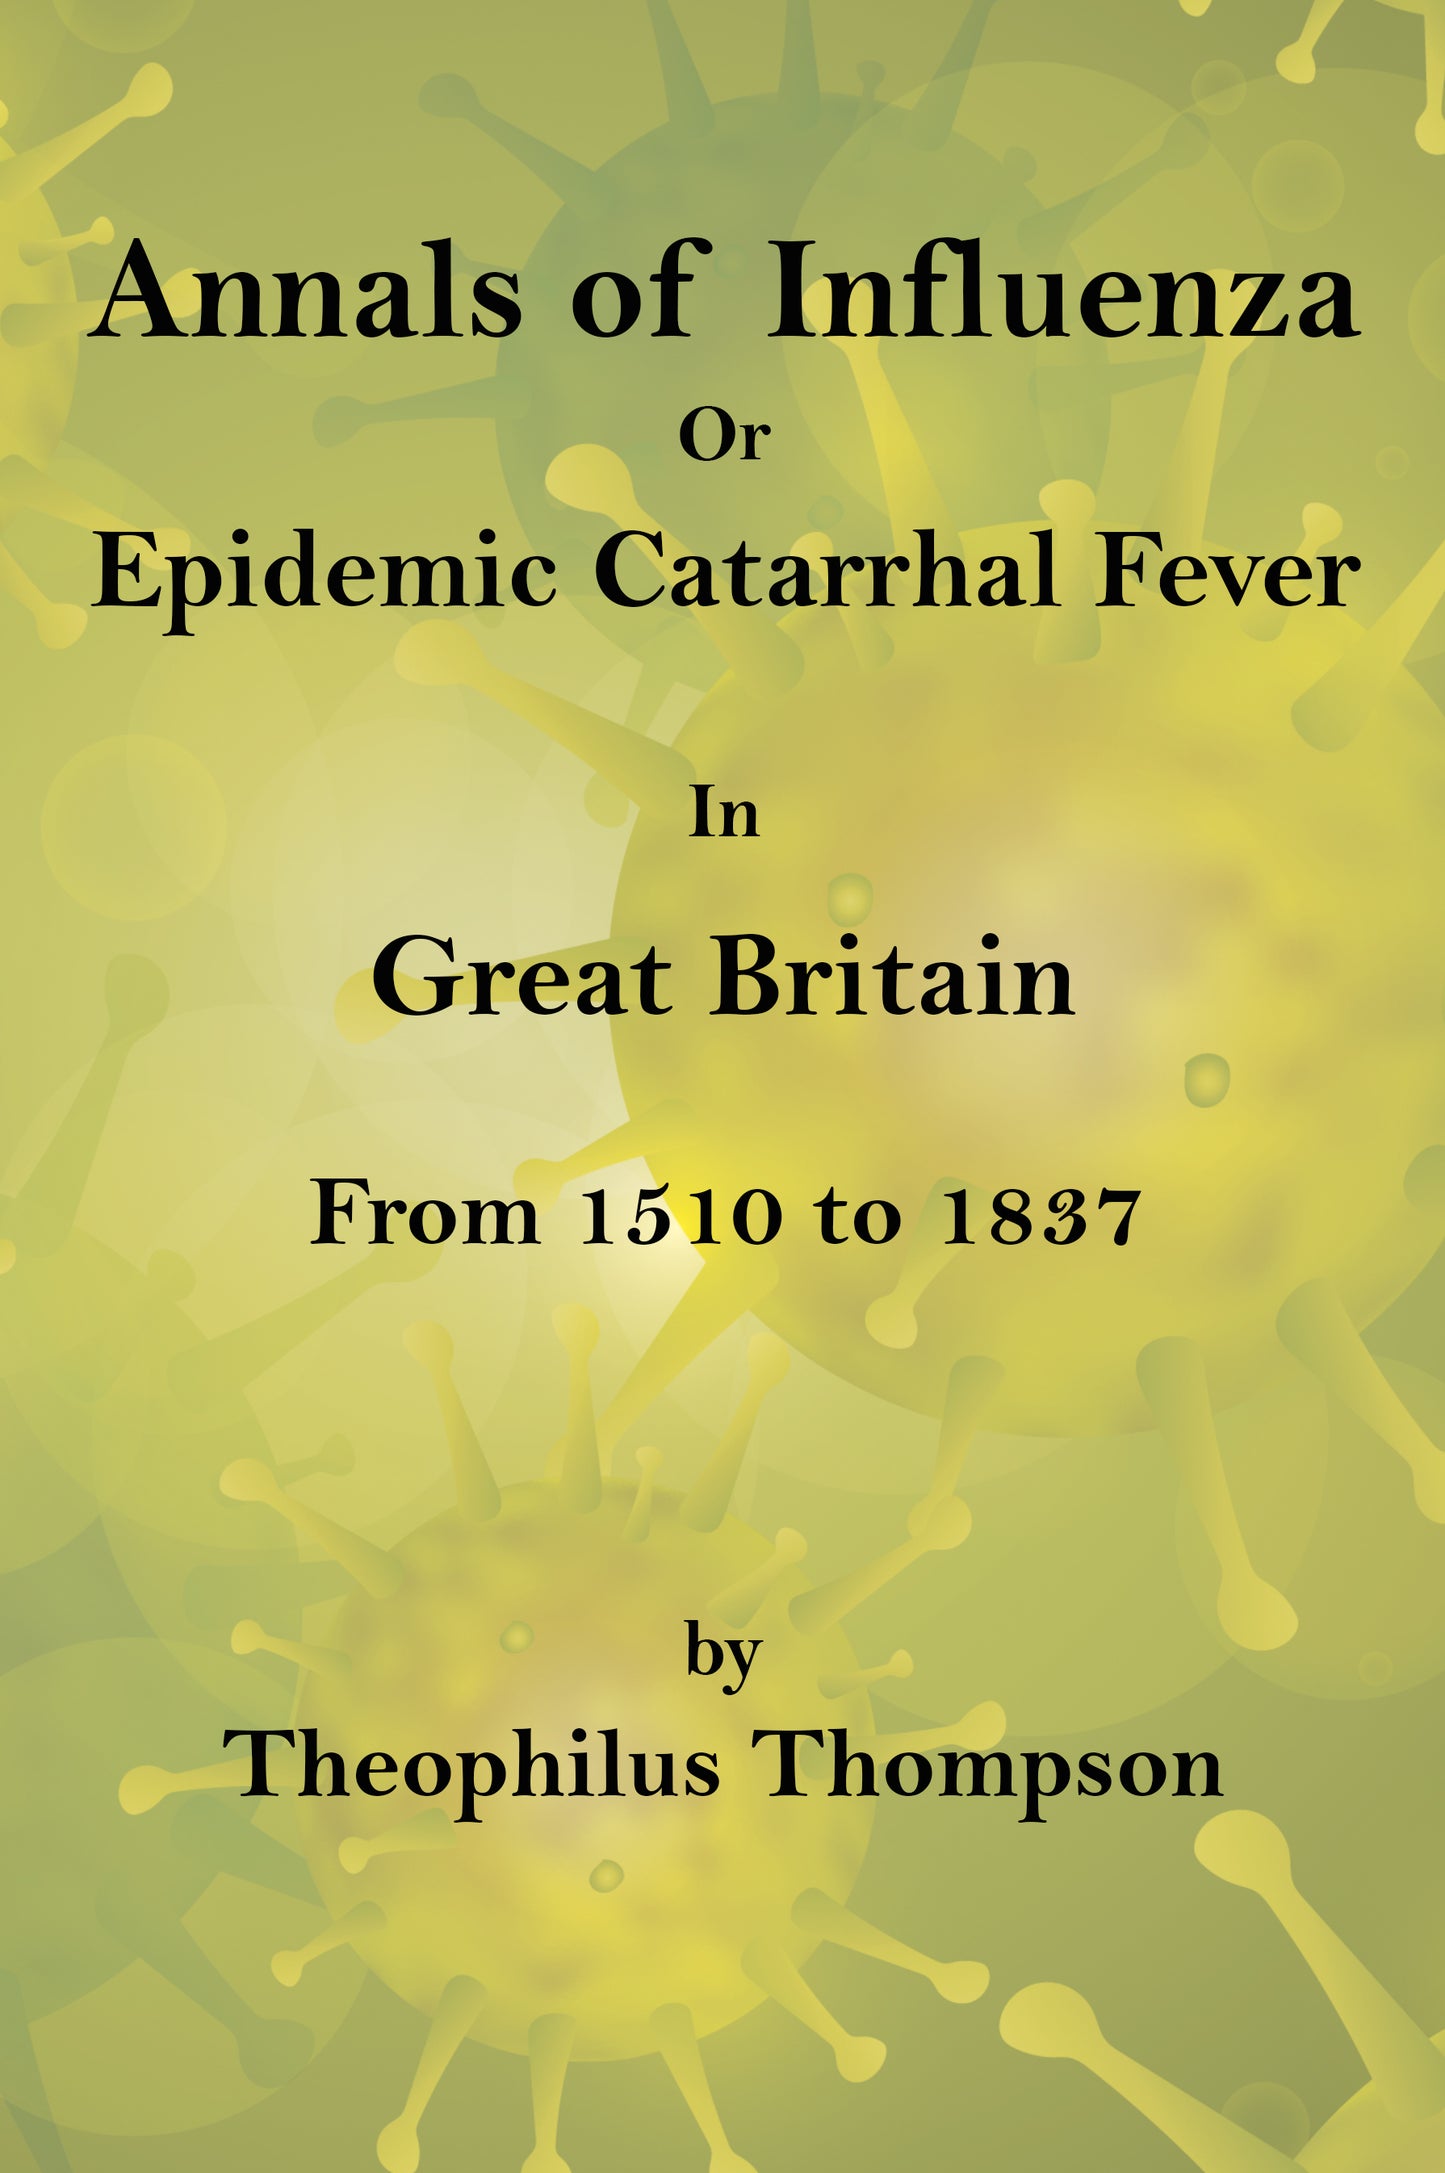 Annals of Influenza in Great Britain